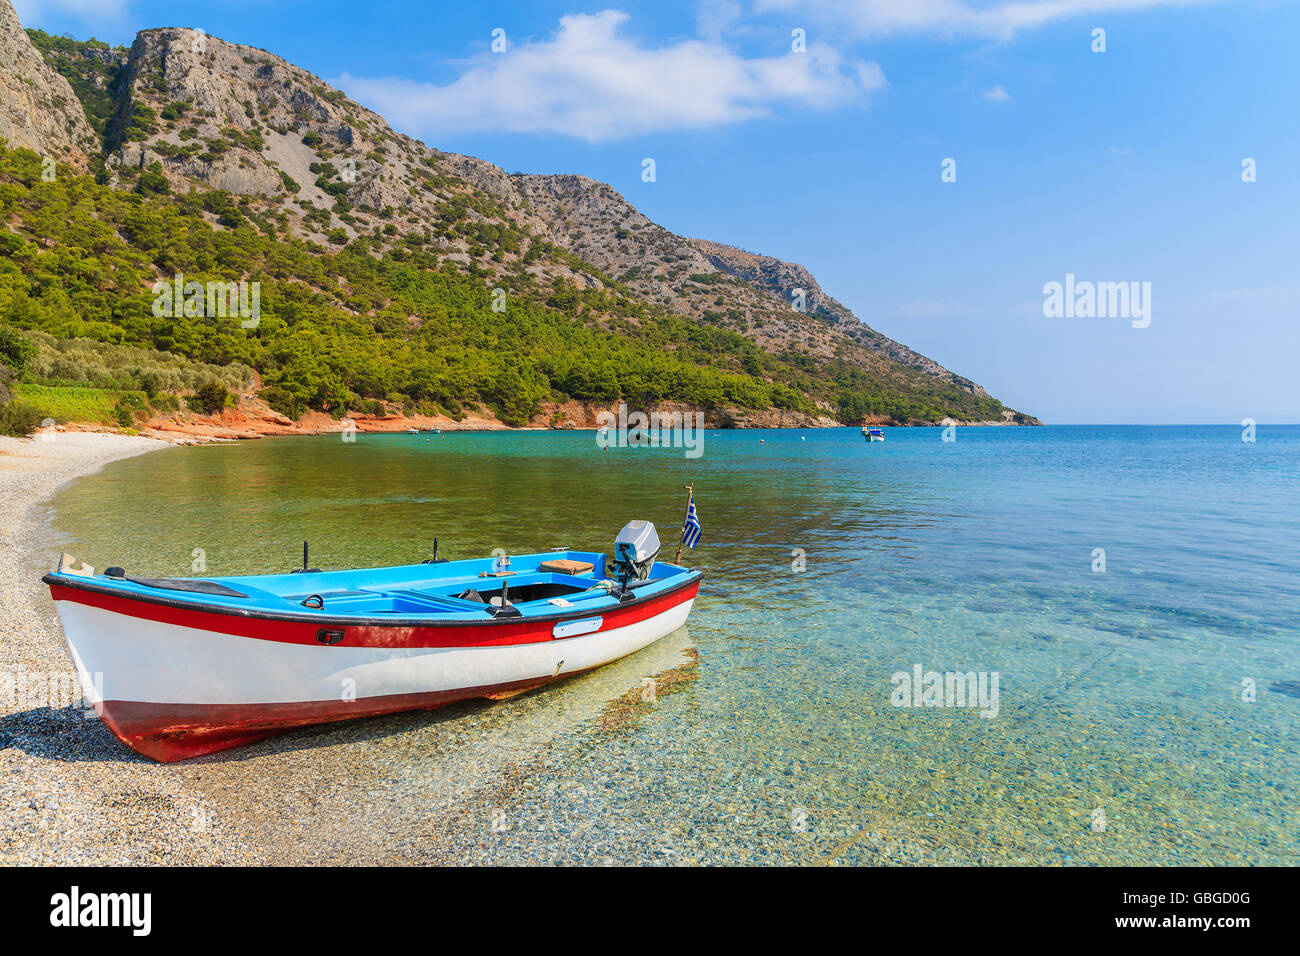 Bateau de pêche traditionnel grec dans la baie de la mer sur une plage isolée, l'île de Samos, Grèce Banque D'Images